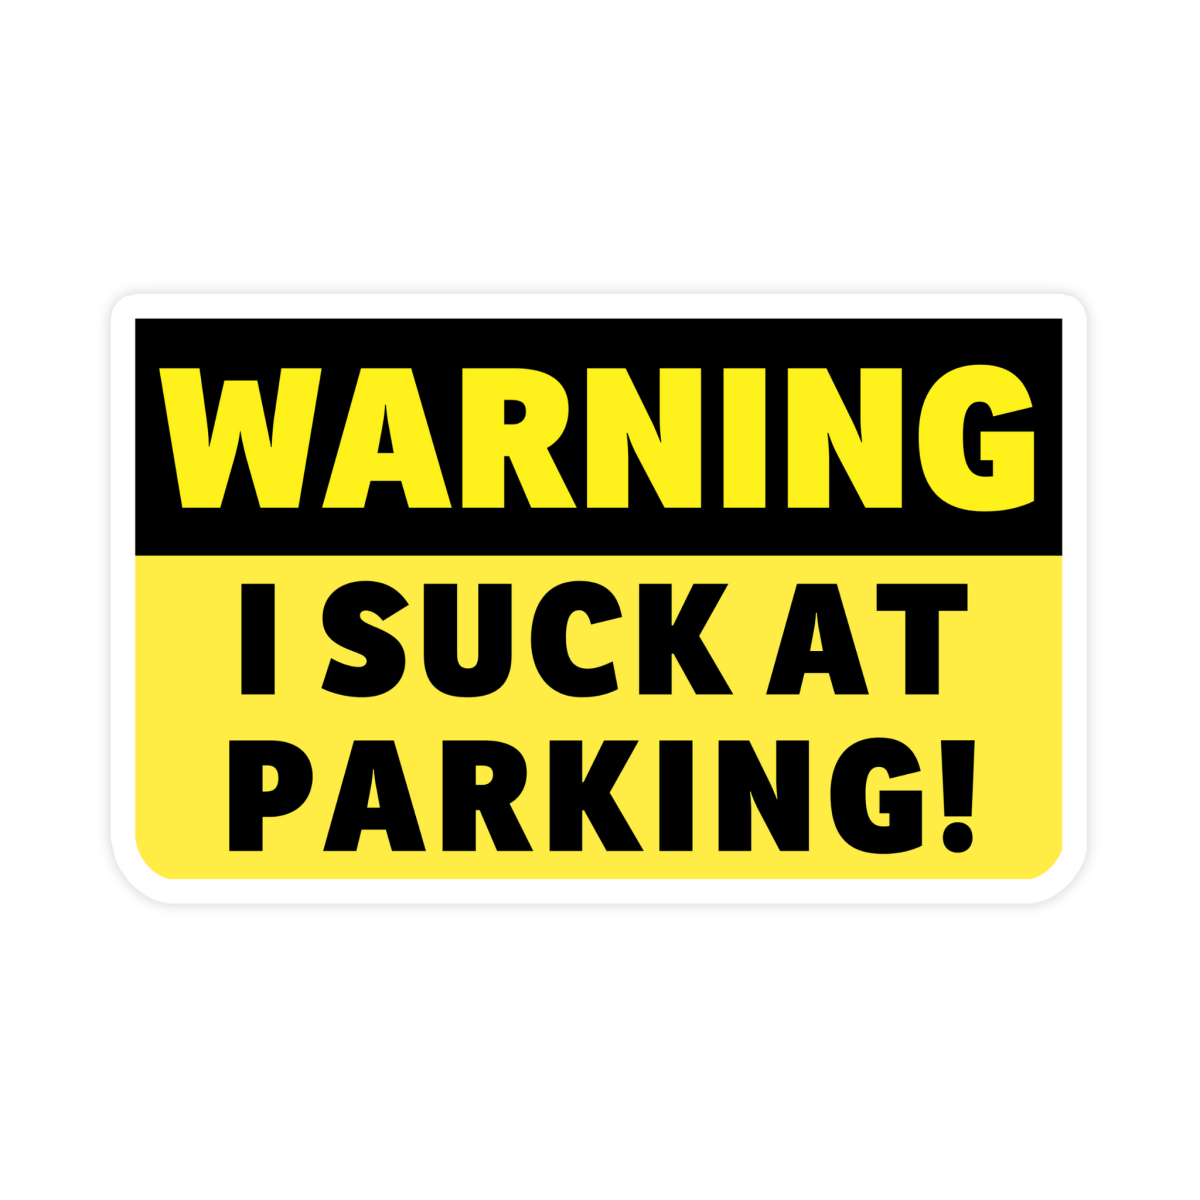 Warning I Suck At Parking Bumper Sticker - stickerbullWarning I Suck At Parking Bumper StickerRetail StickerstickerbullstickerbullTaylor_SuckAtParkingWarning I Suck At Parking Bumper Sticker